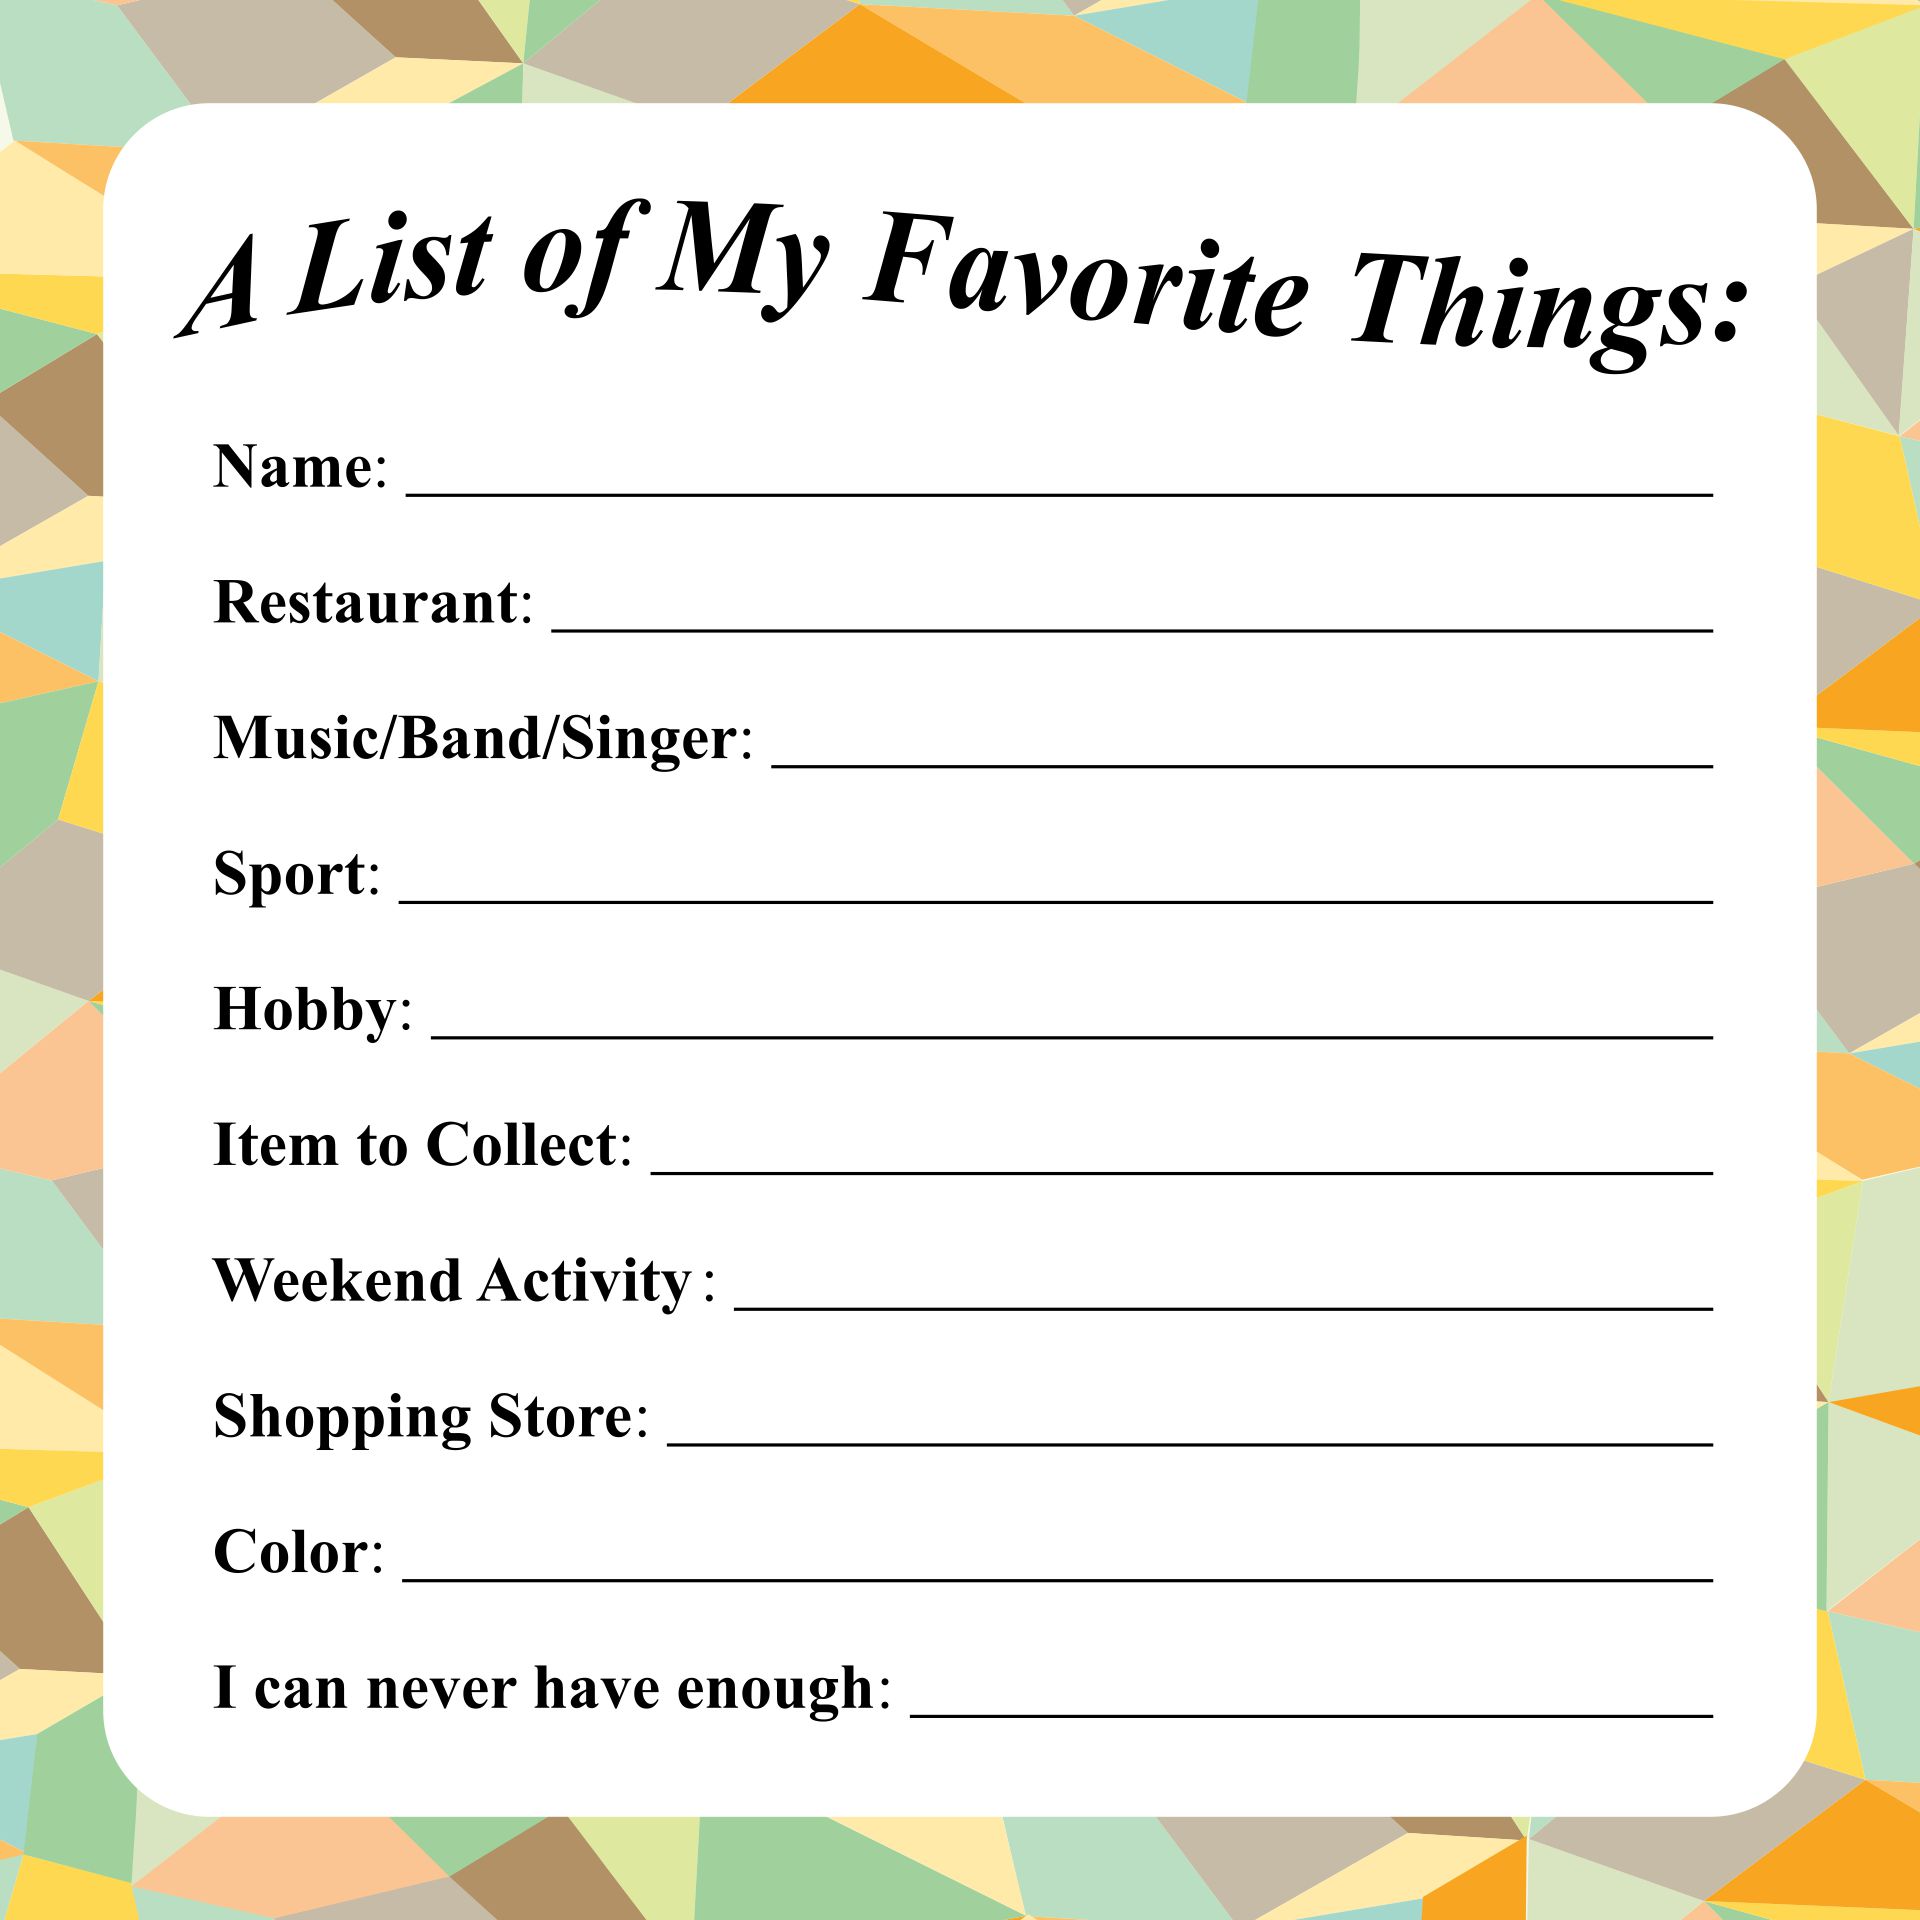 Free Printable Employee Favorite Things List